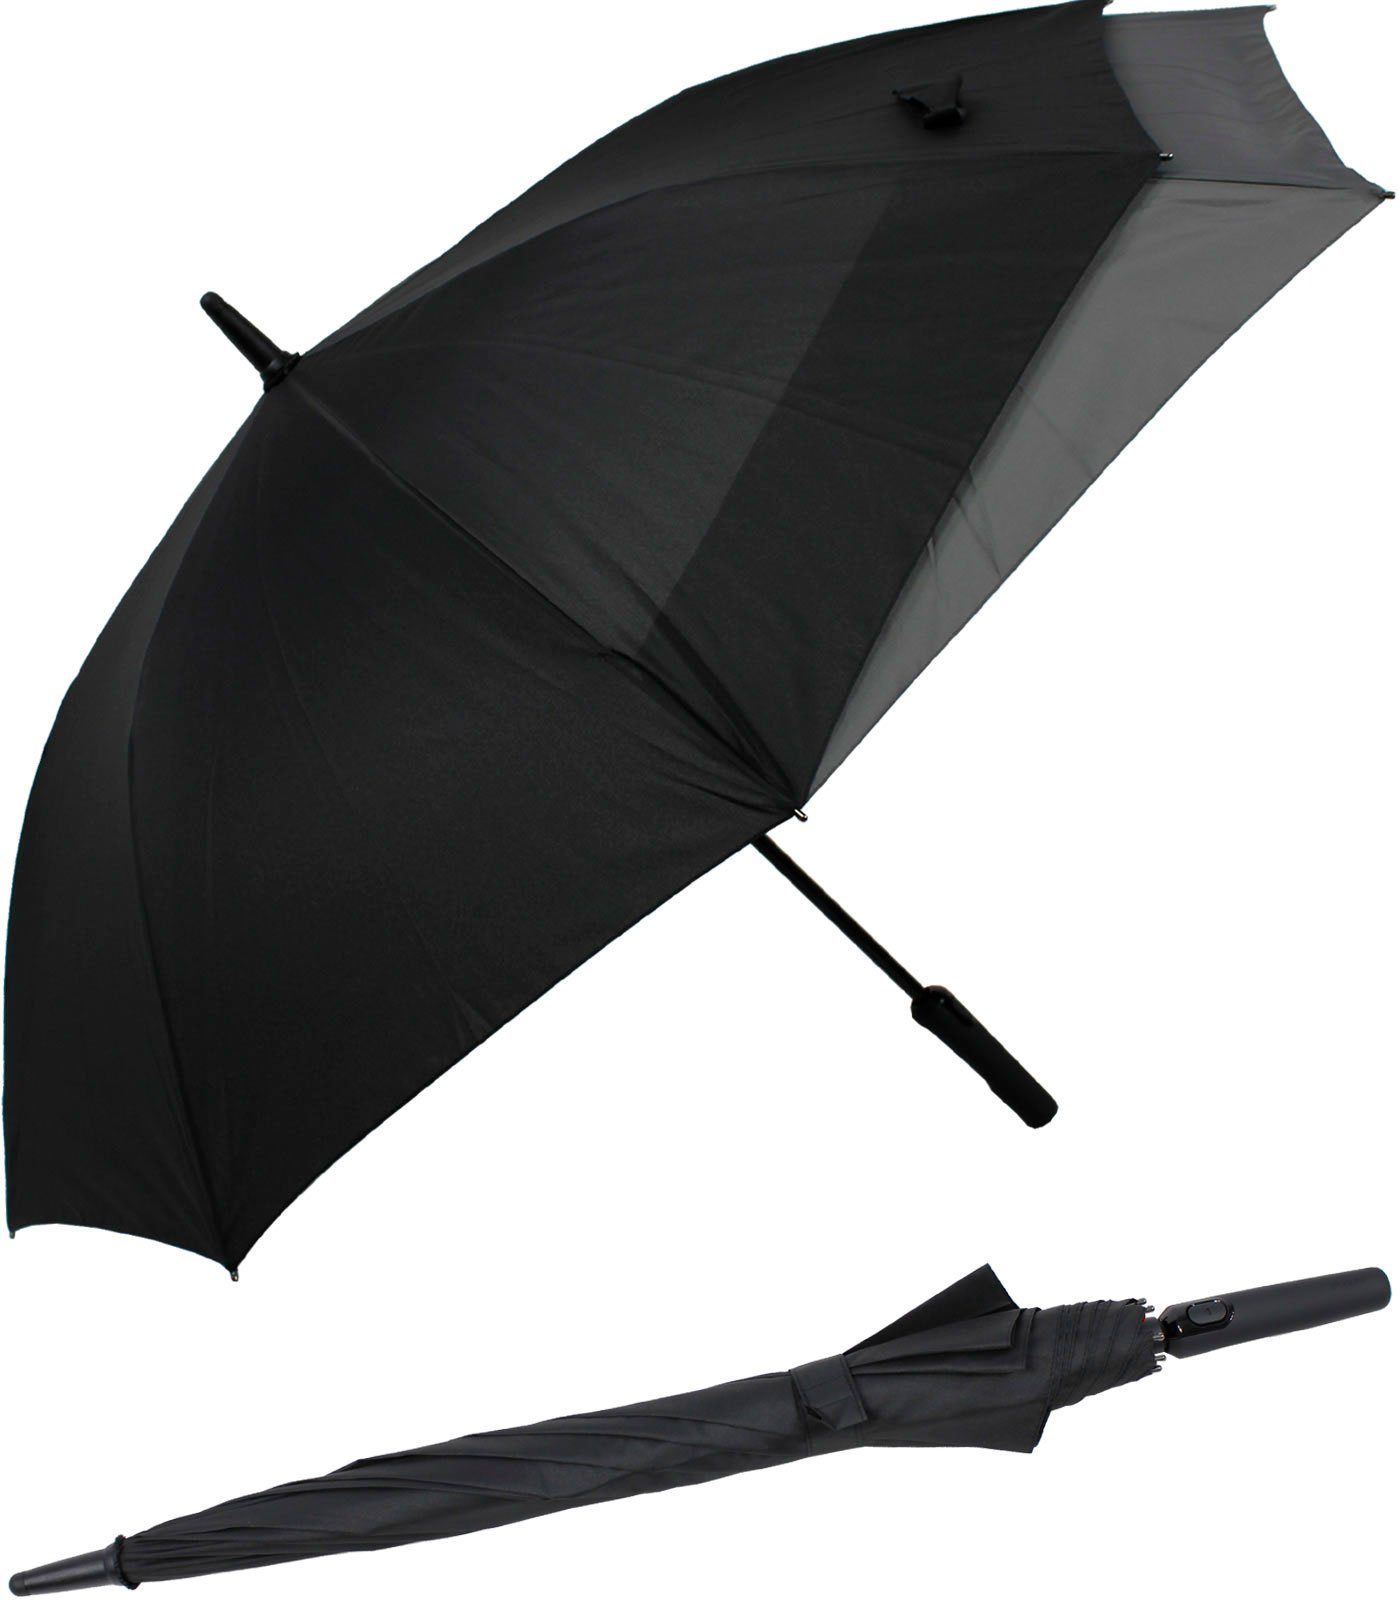 doppler® Langregenschirm Fiberglas mit Auf-Automatik - Move to XL, vergrößert sich beim Öffnen für mehr Schutz vor Regen schwarz-grau